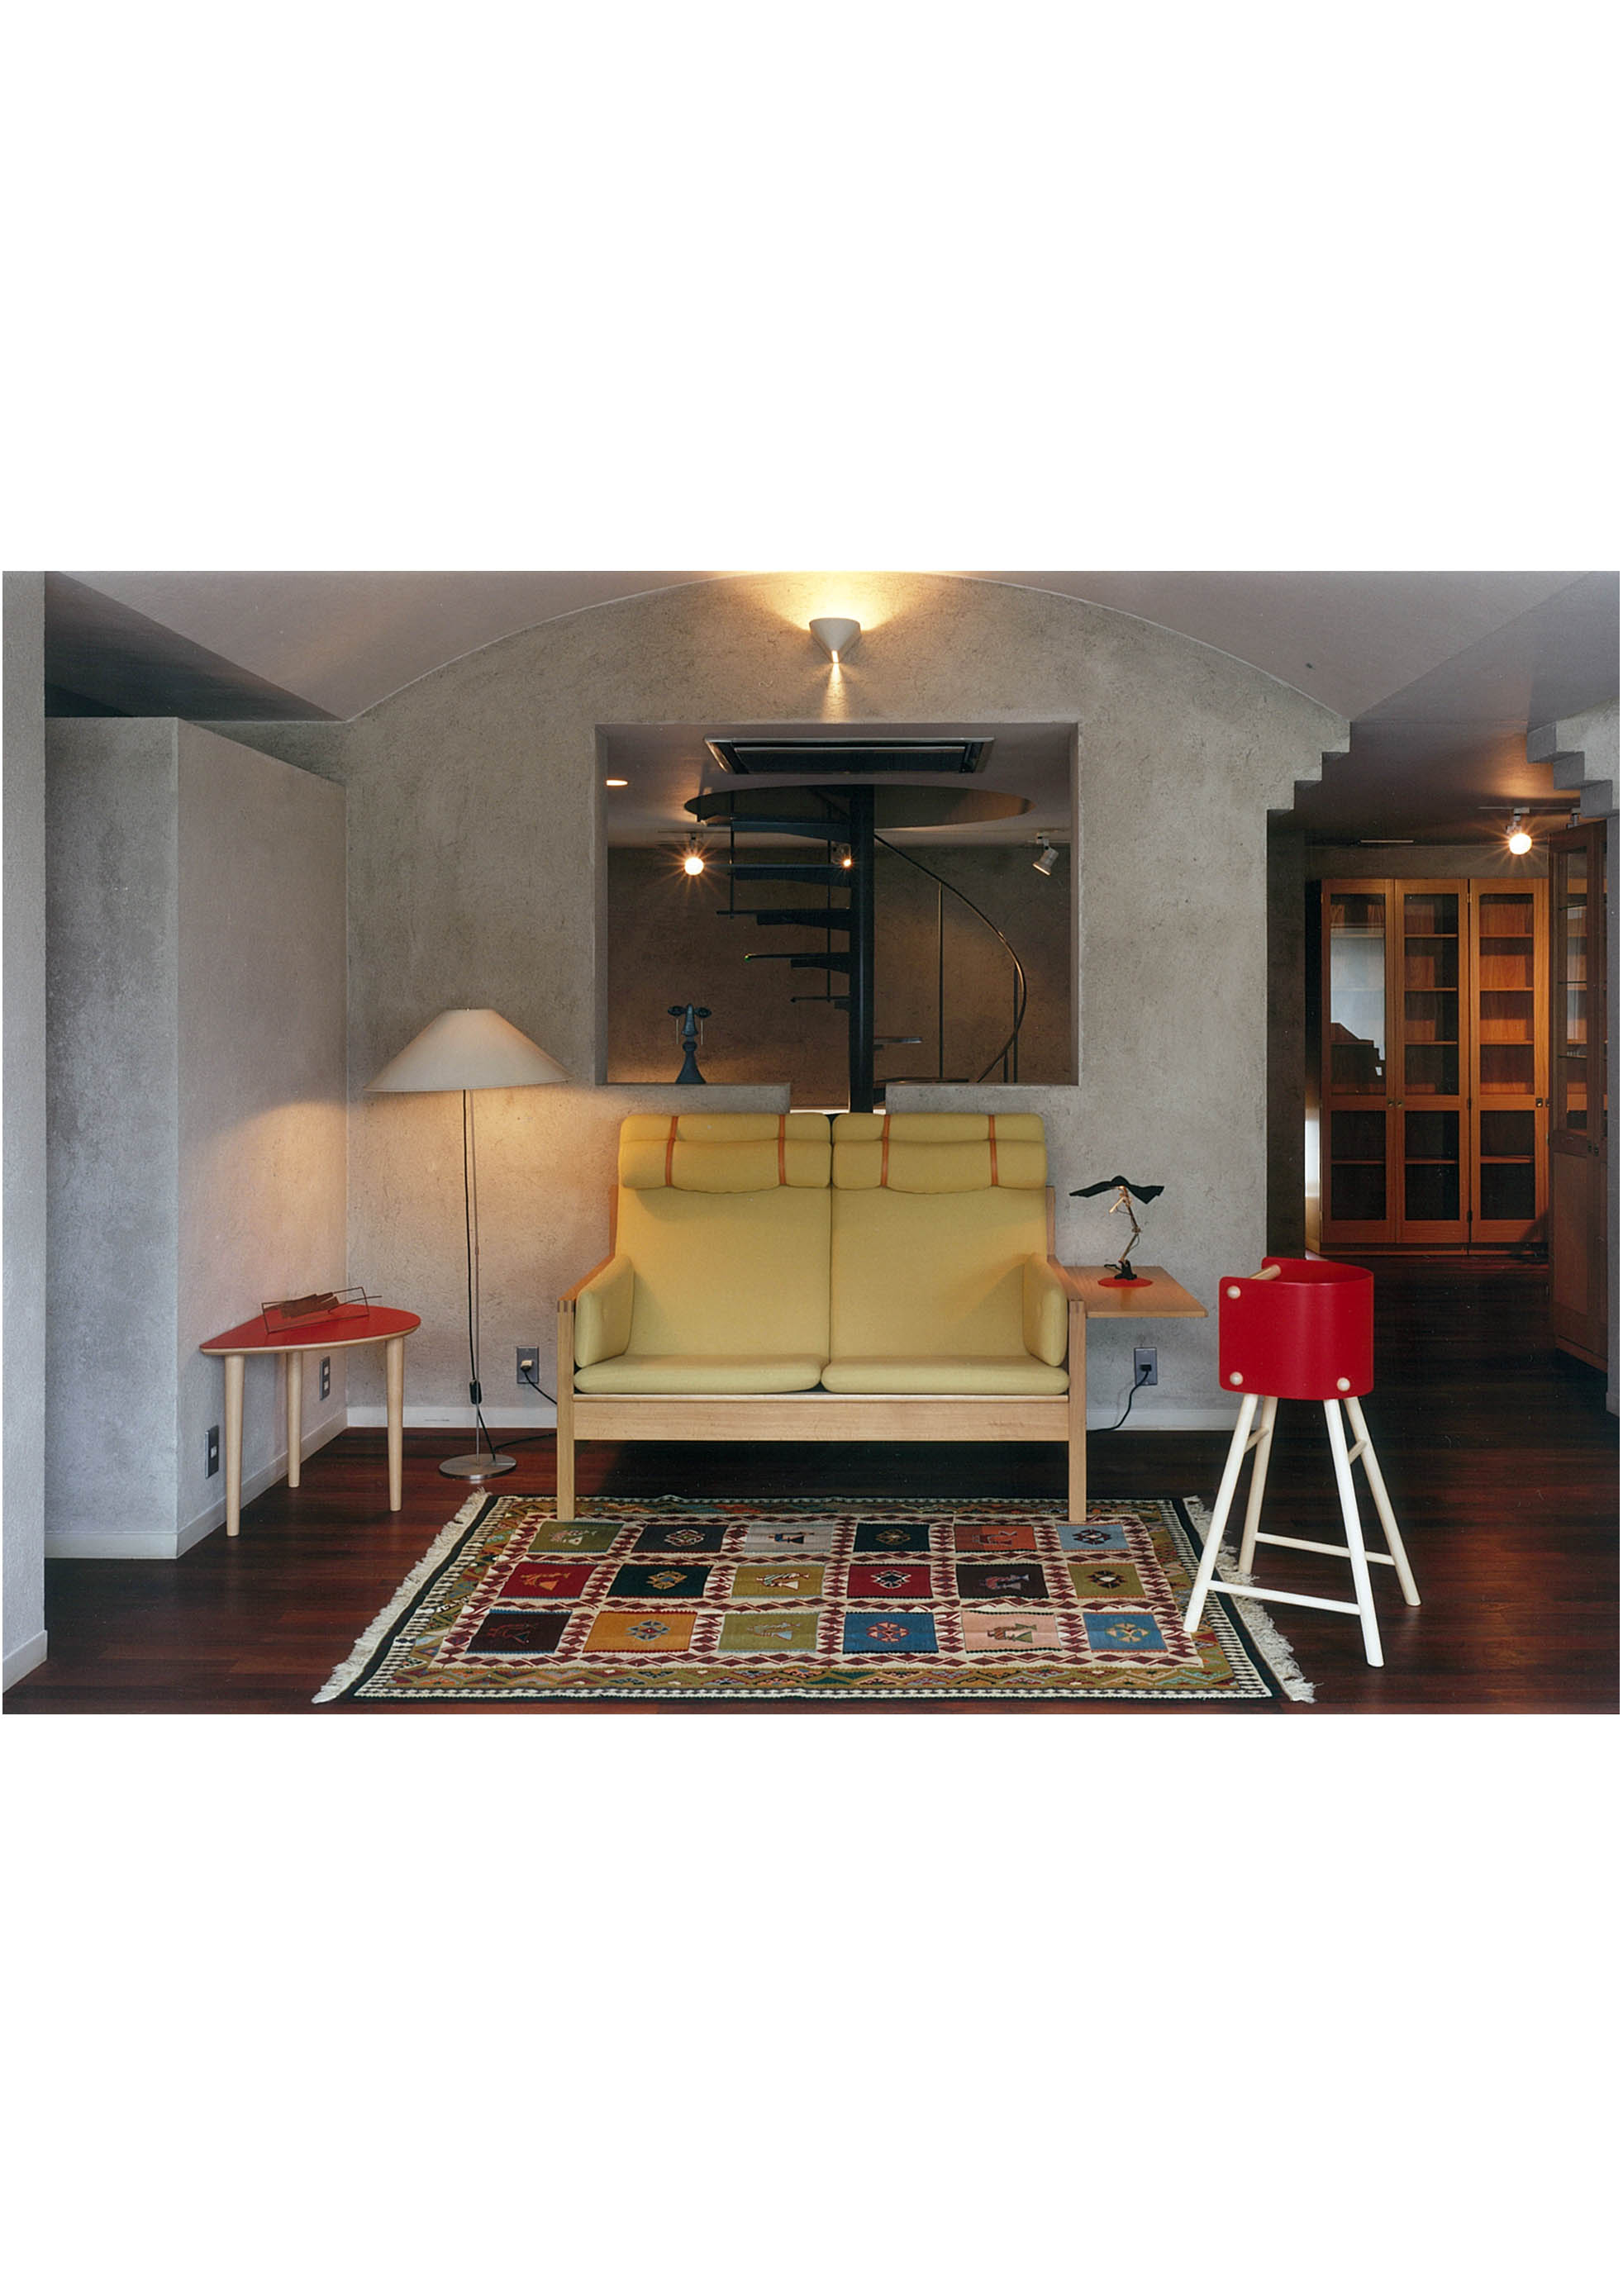 北欧家具と下に敷かれる手織りキリムの写真